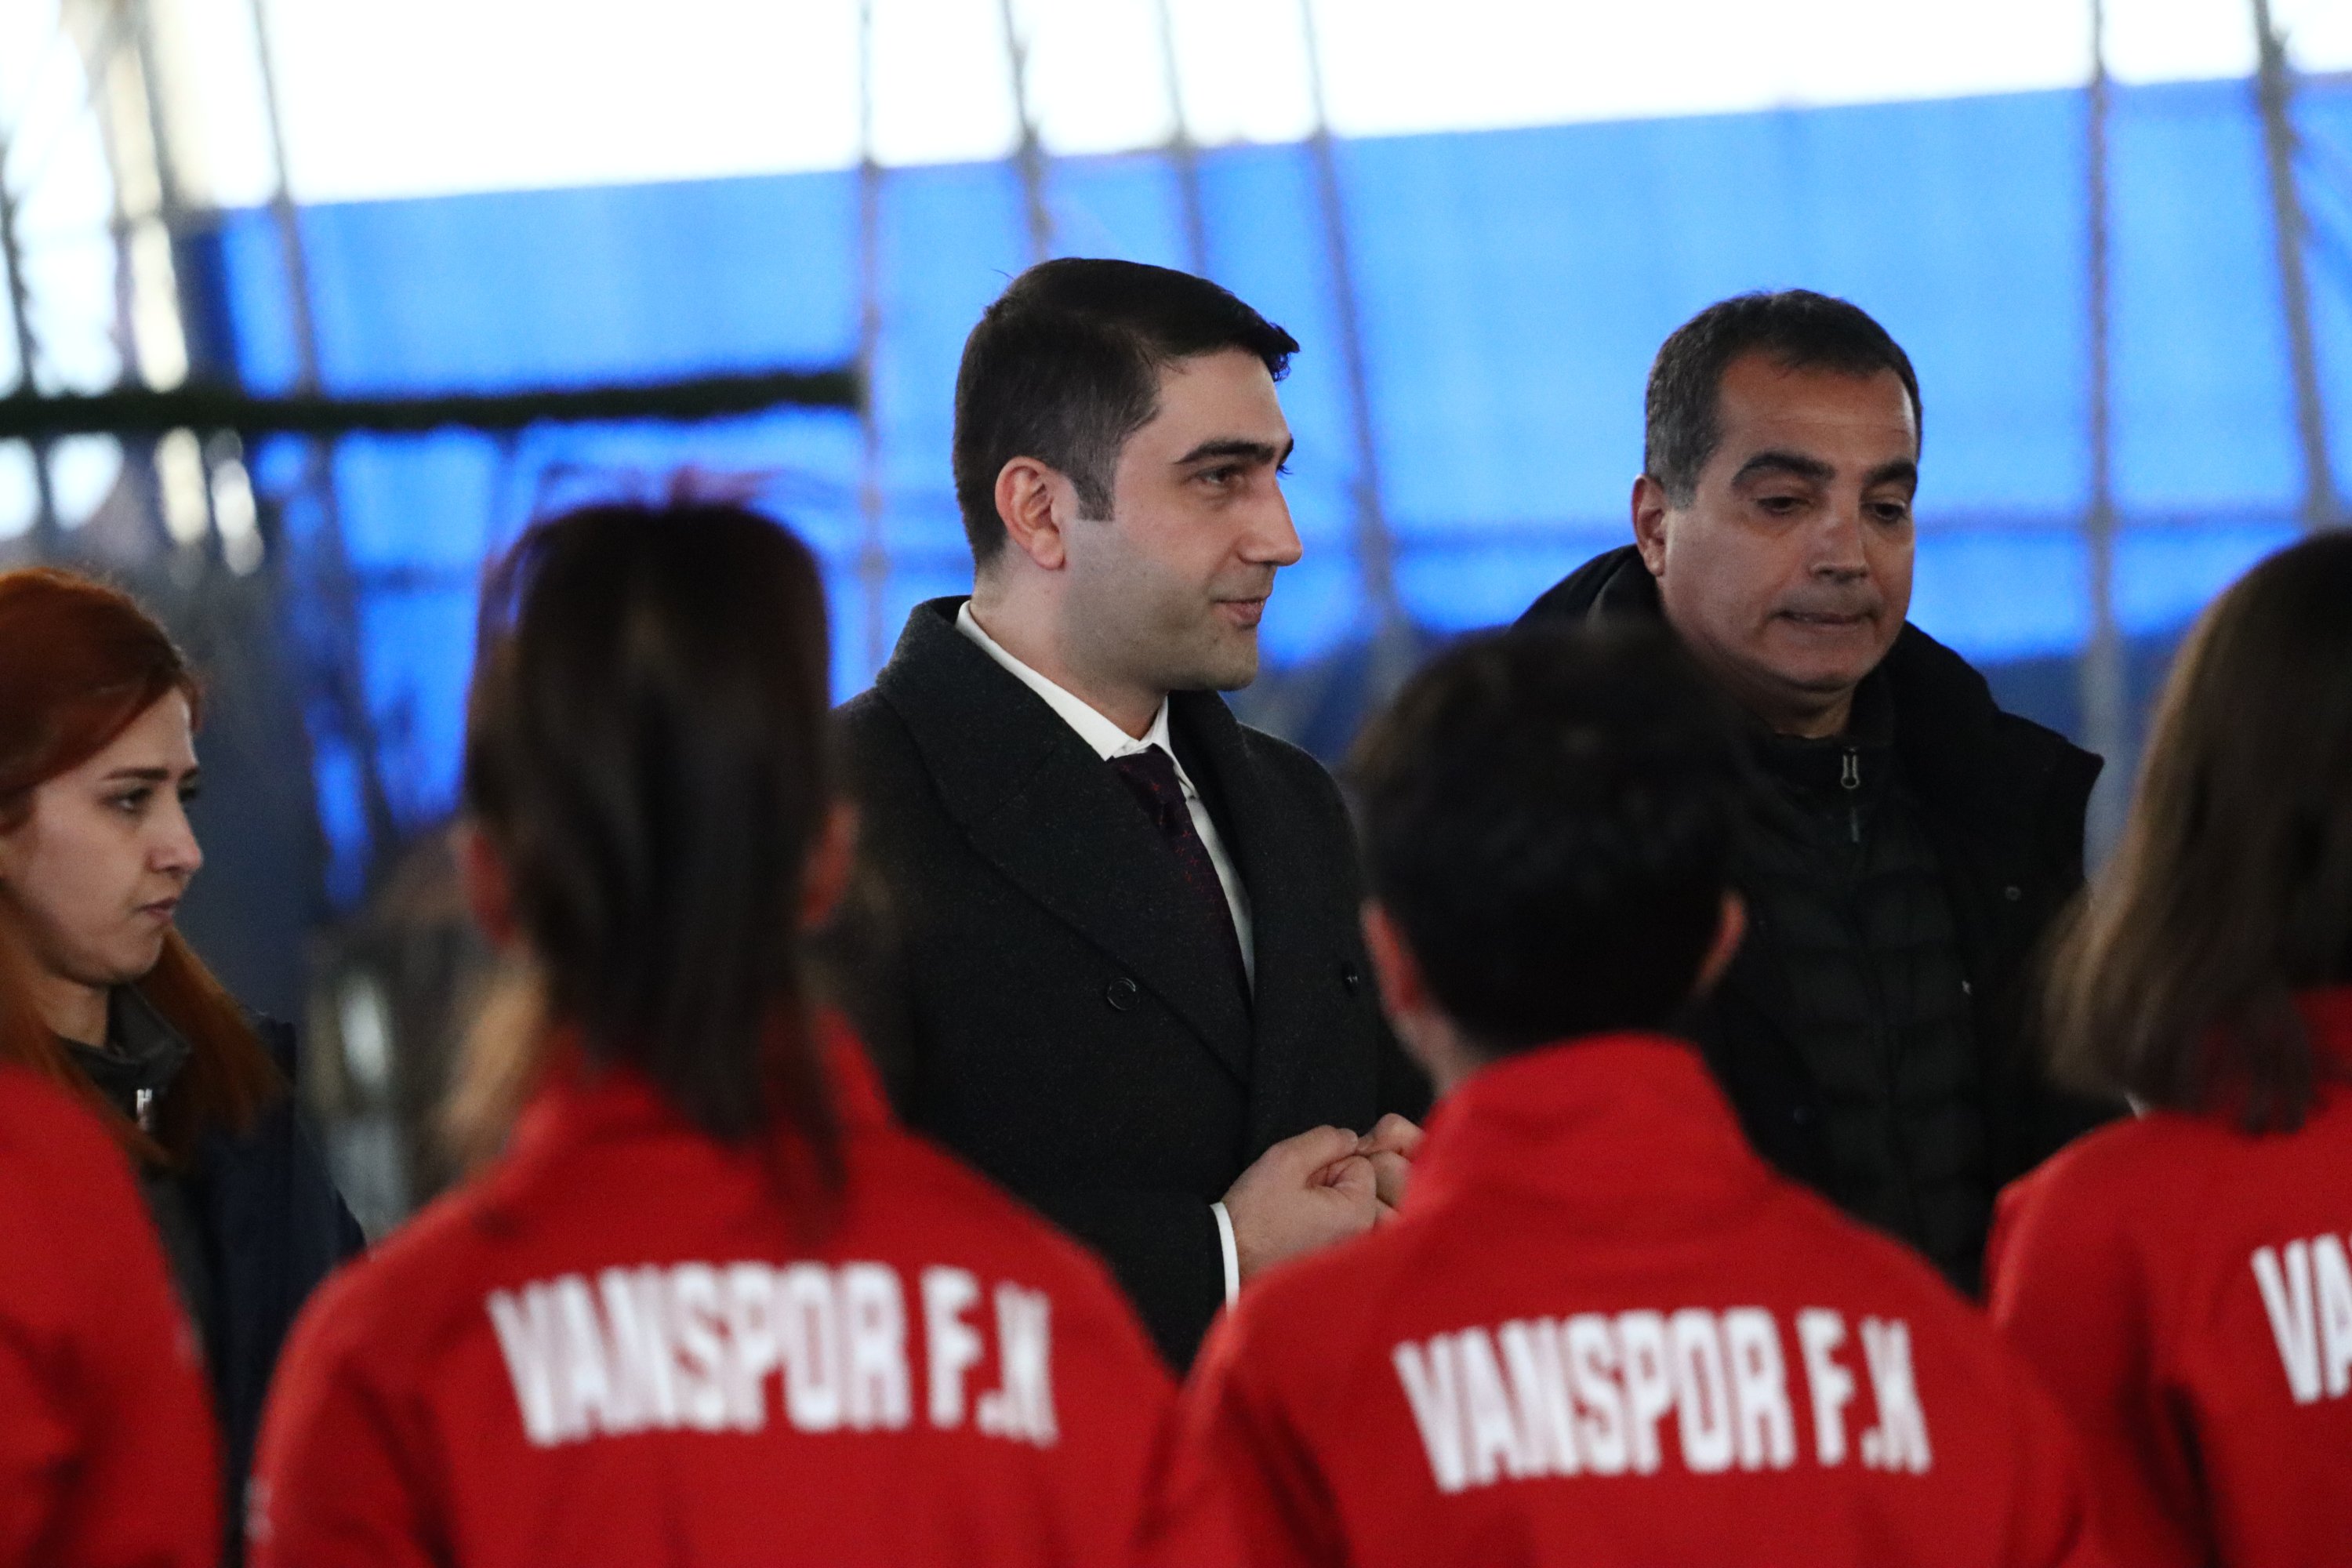 Vanspor başkanı Mehmet Avcı (ortada) kadın takımıyla antrenman öncesi konuşuyor, Van, Türkiye, 22 Ocak 2022 (Fotoğraf Vanspor'un izniyle)